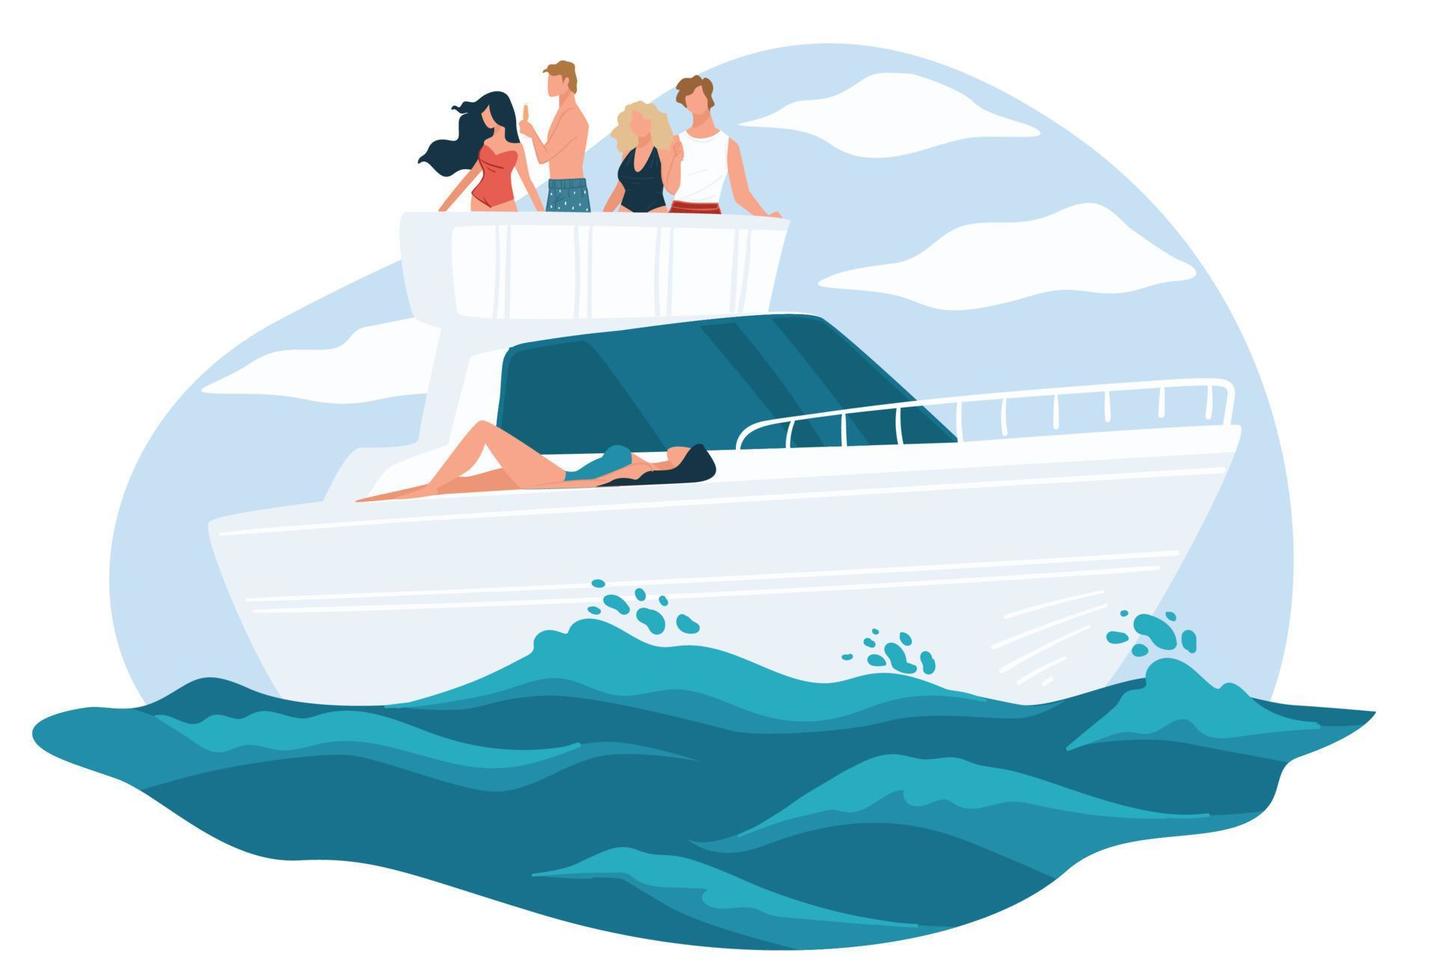 Freunde, die sich auf einer Yacht, einer See- oder Ozeankreuzfahrt entspannen vektor